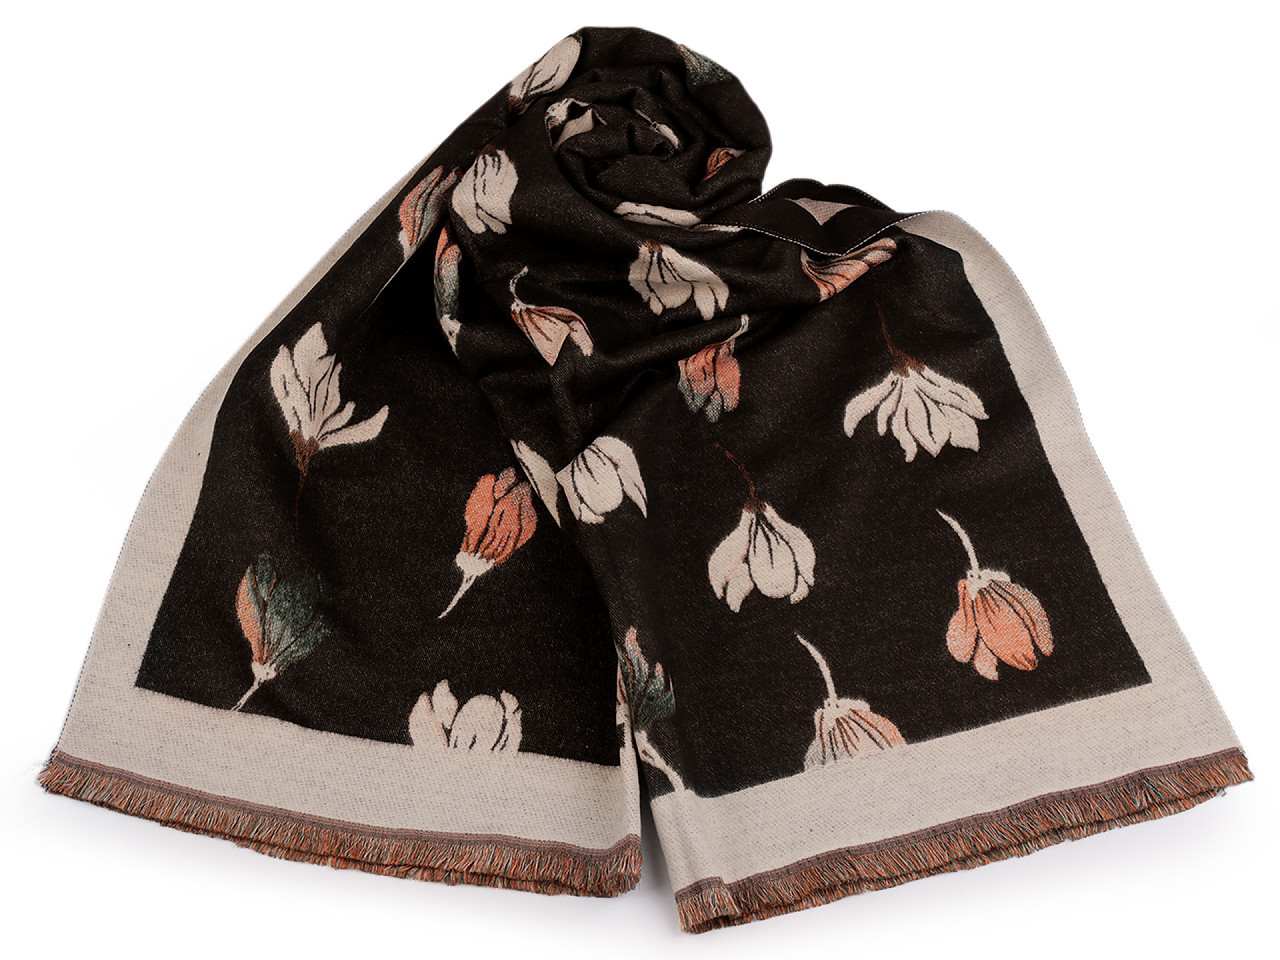 Šátek / šála typu kašmír s třásněmi, květy 65x190 cm, barva 11 hnědá tmavá béžová světlá